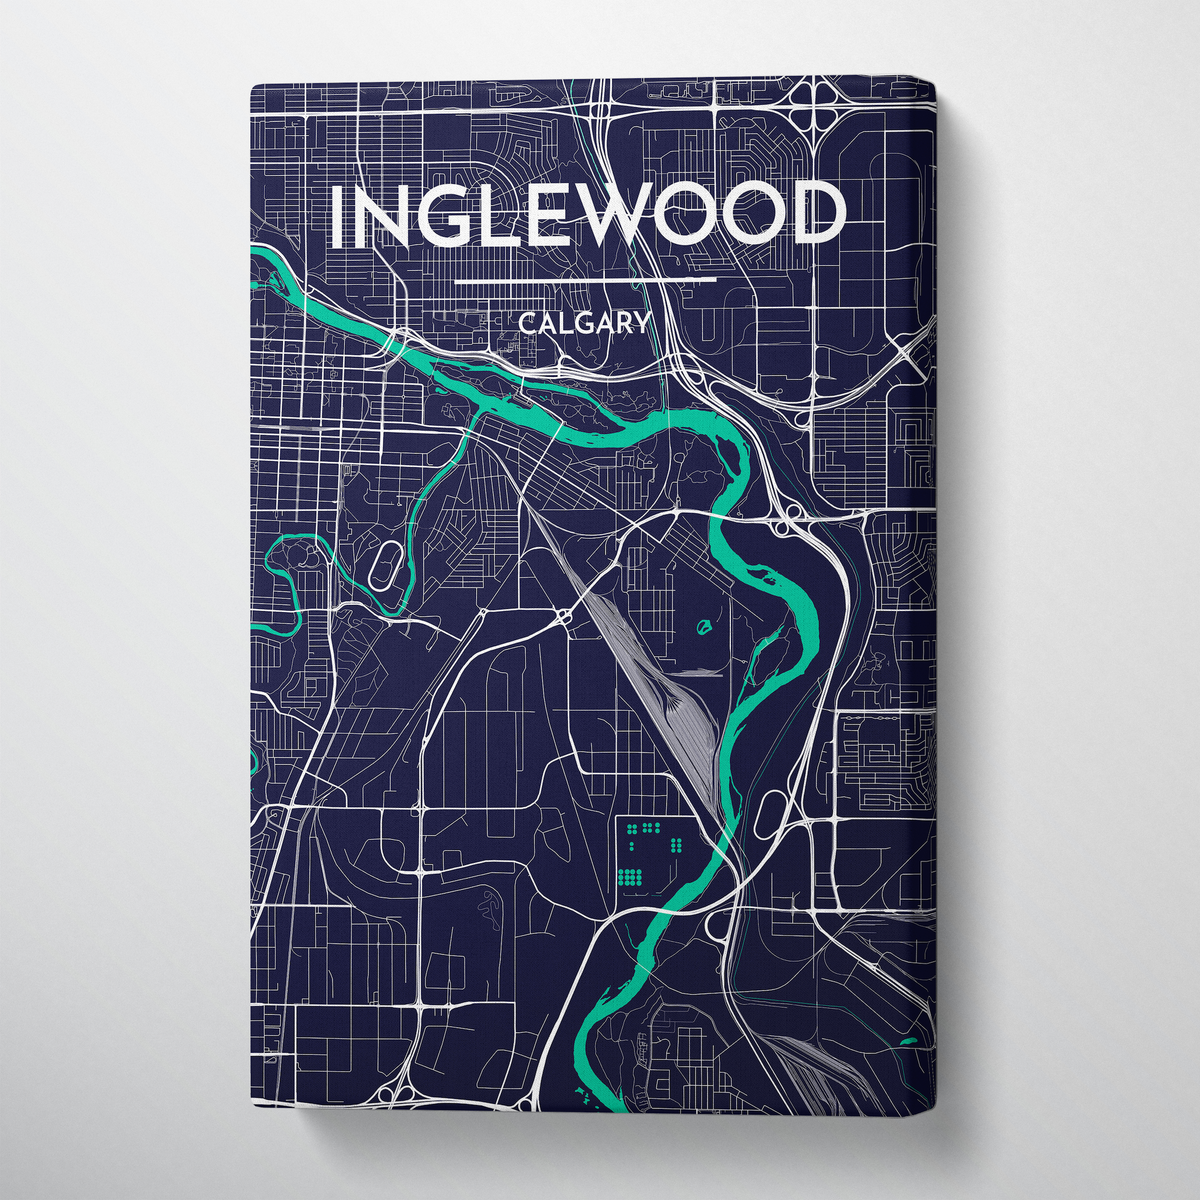 Calgary - Inglewood Neighborhood Map Art - Canvas Wrap - Point Two Design